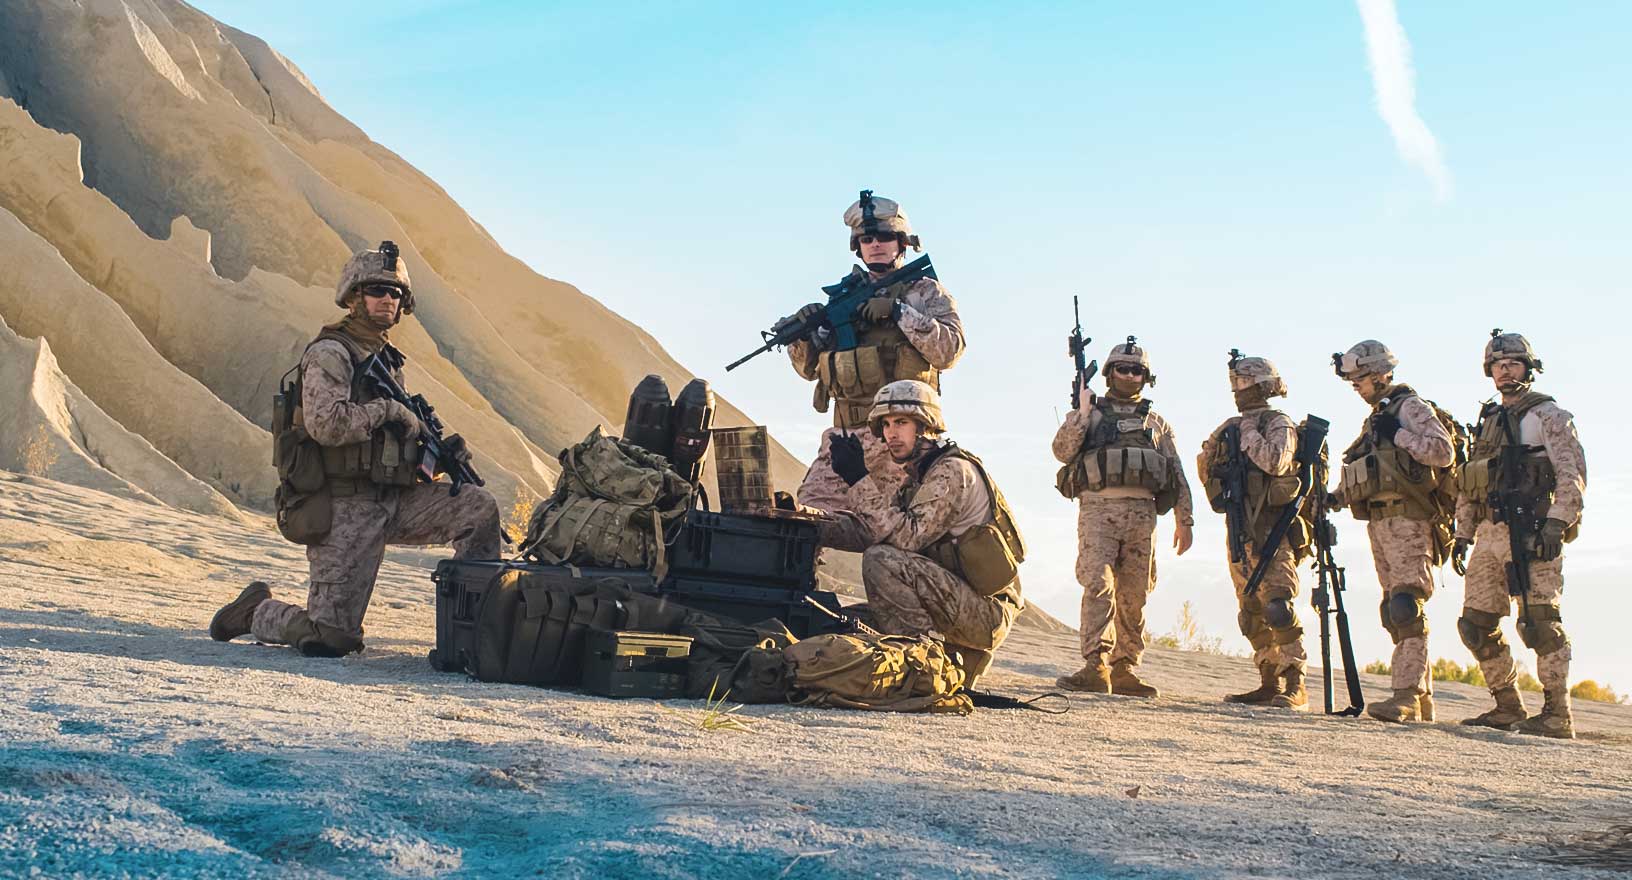 Un grupo de soldados estadounidenses en una misión de exploración.